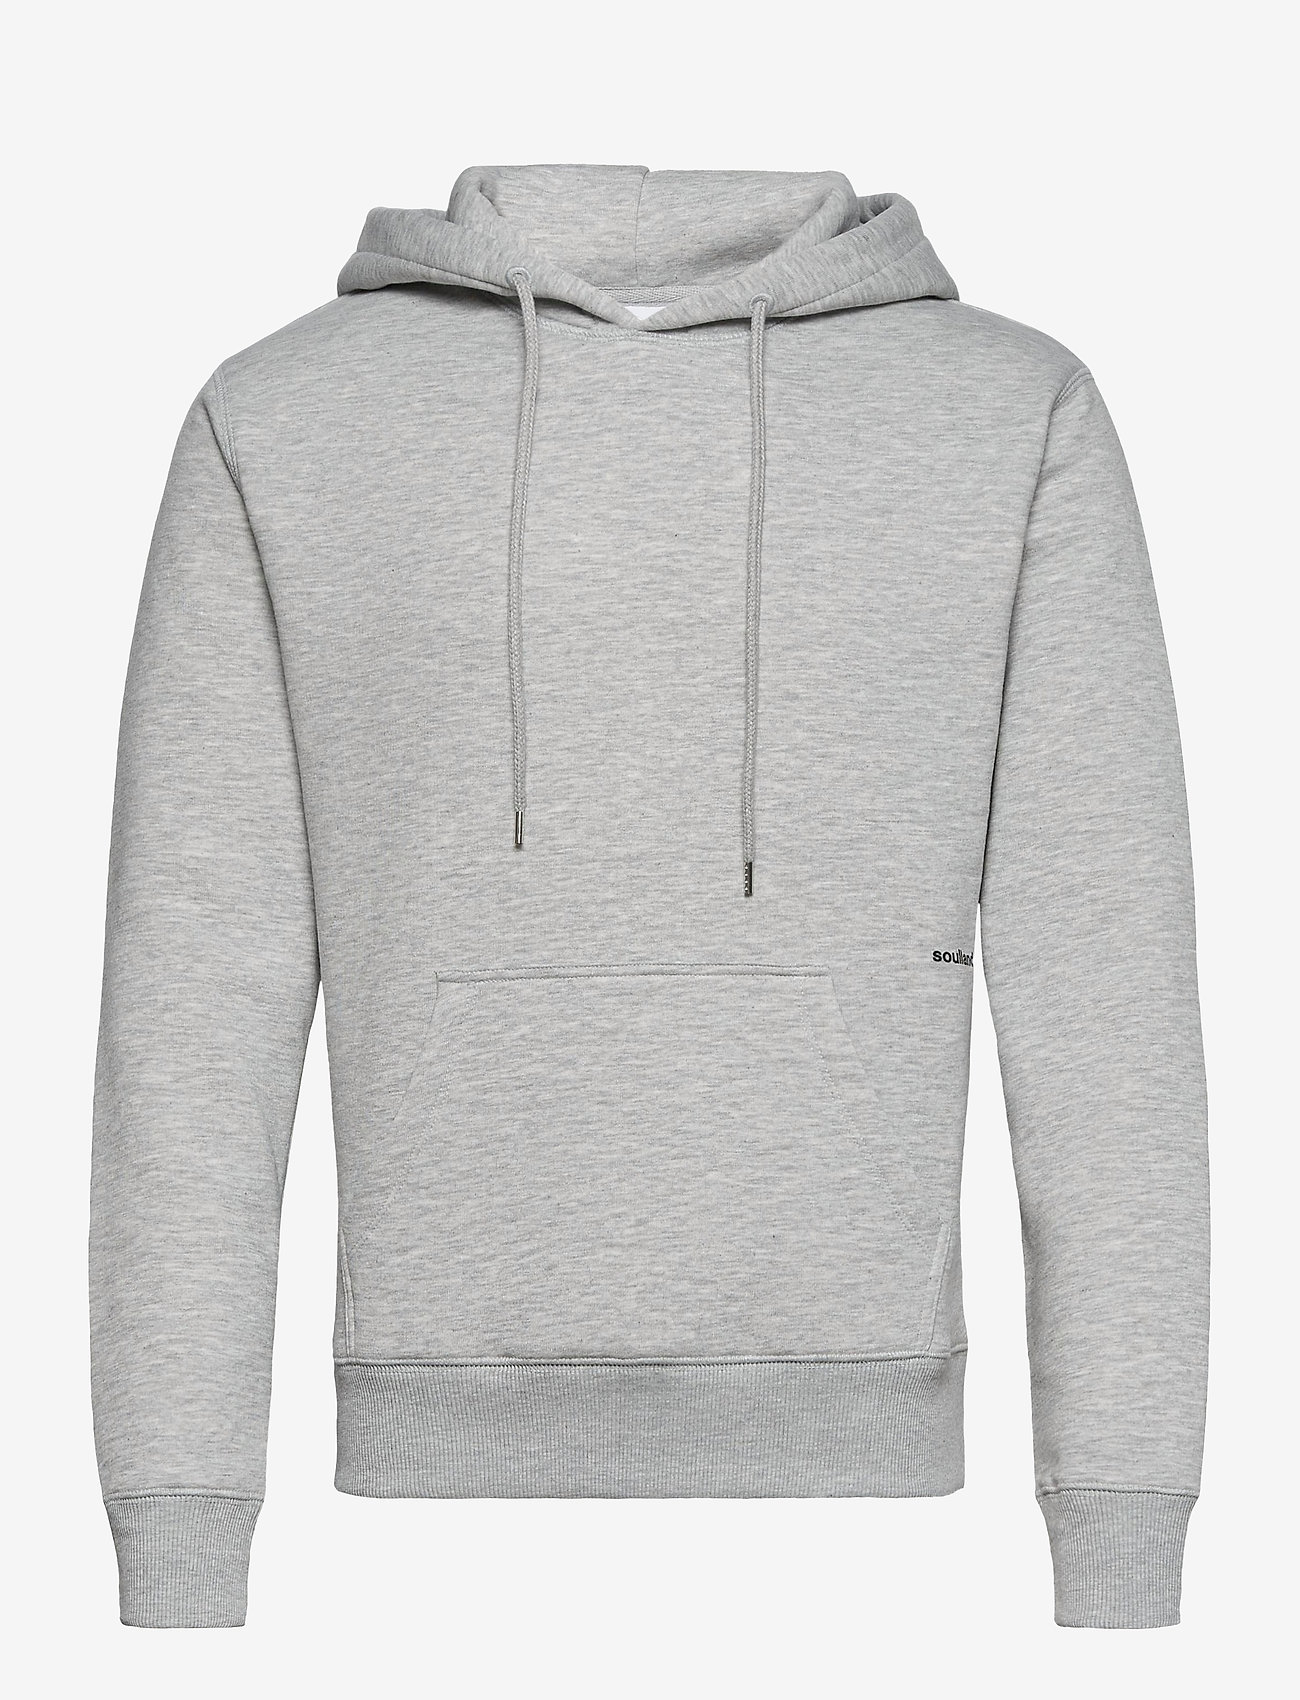 Soulland - Wilme hoodie - sweatshirts & hoodies - grey melange - 0